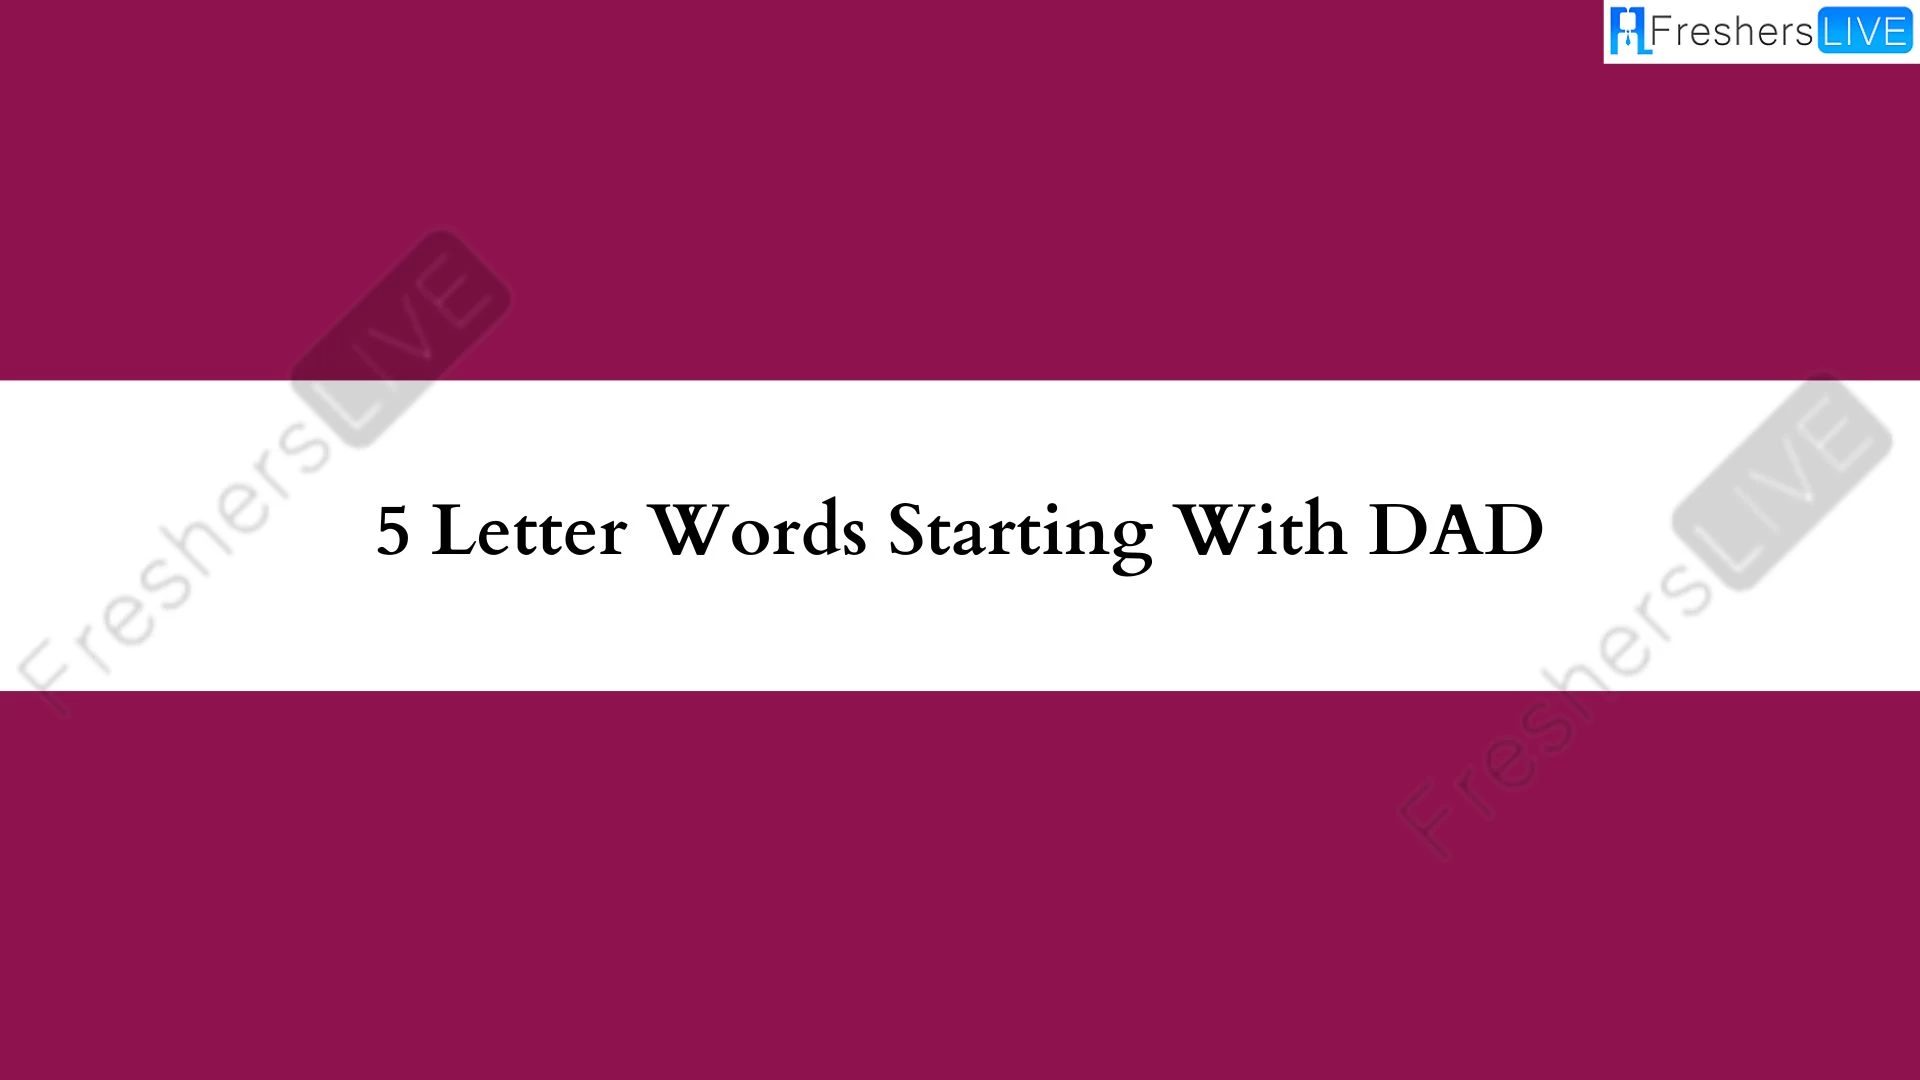 Palabras de 5 letras comenzando con DADA